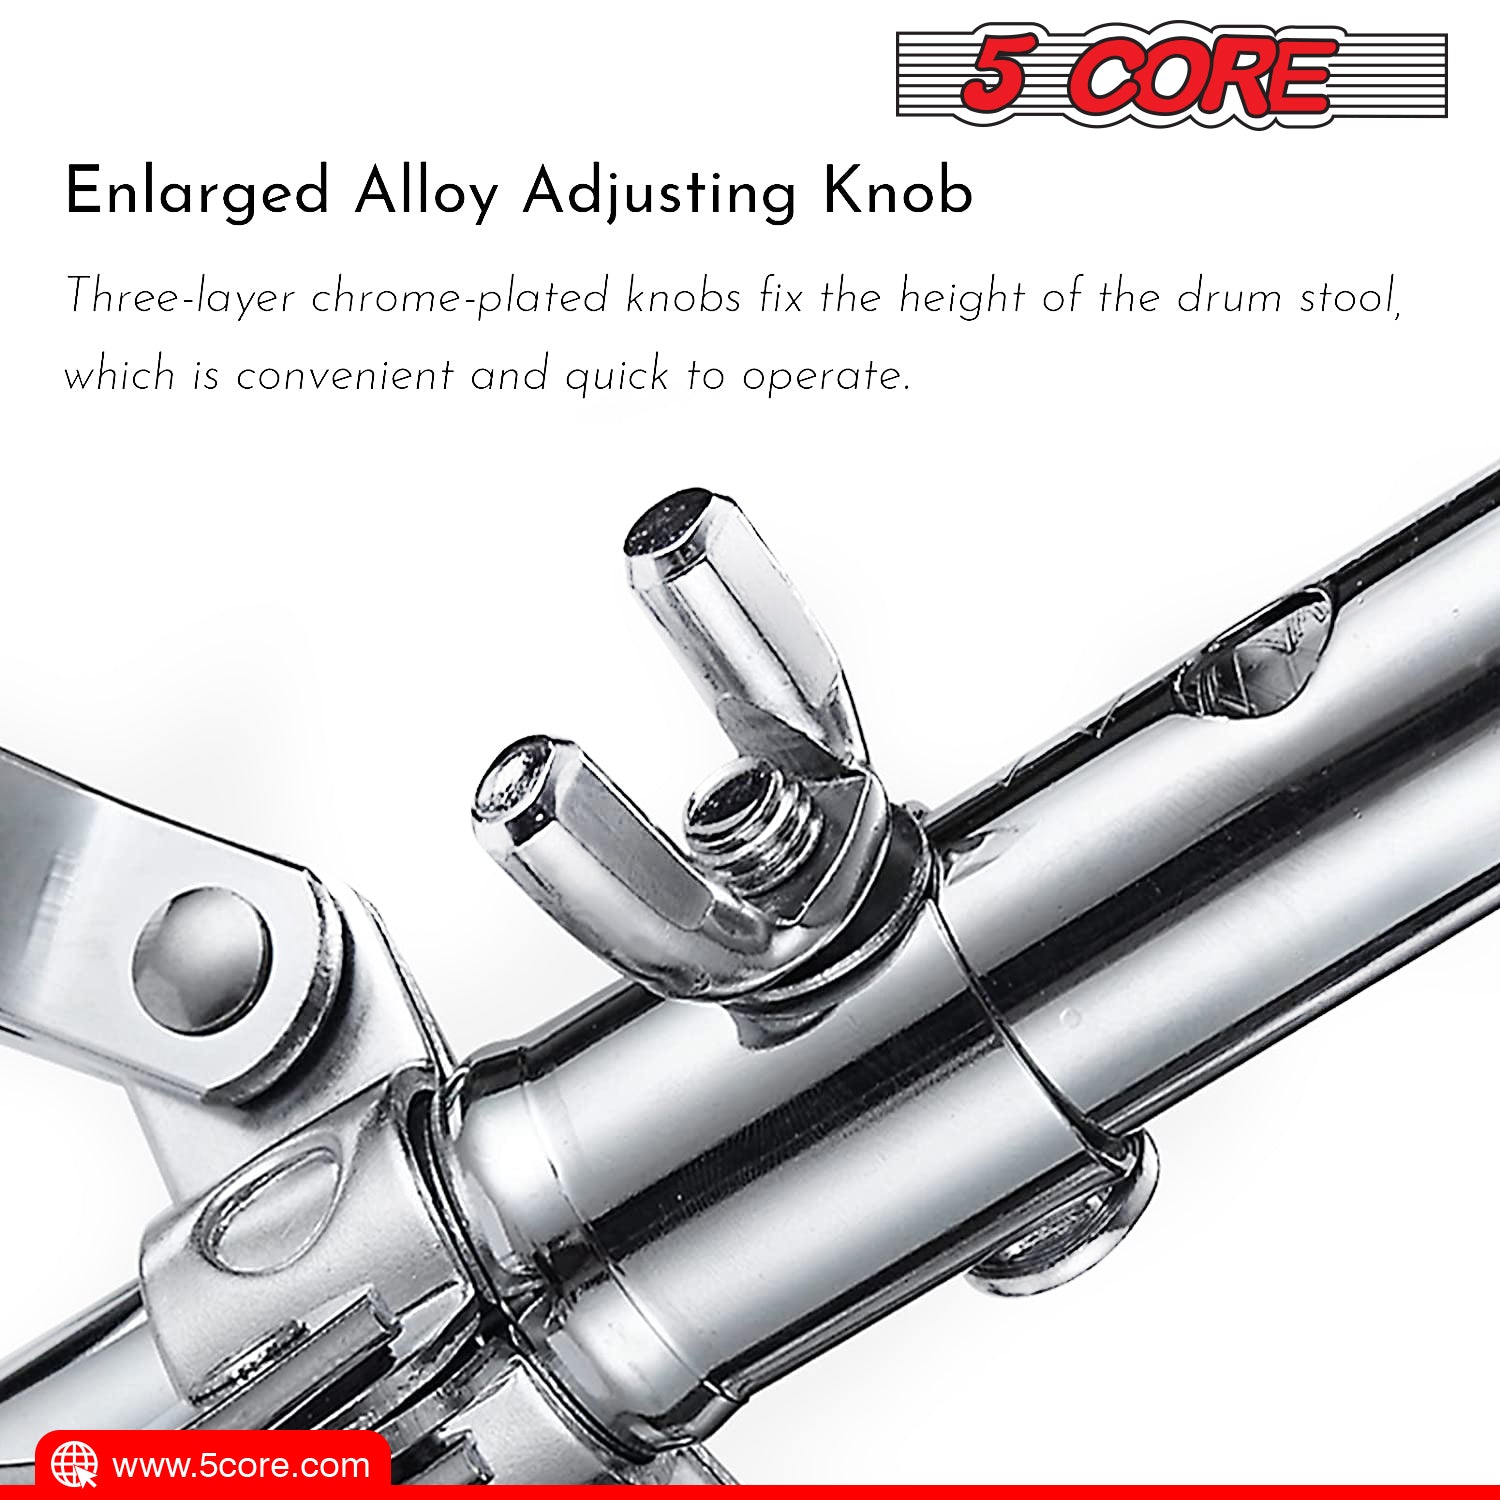 Enlarged alloy adjusting knob